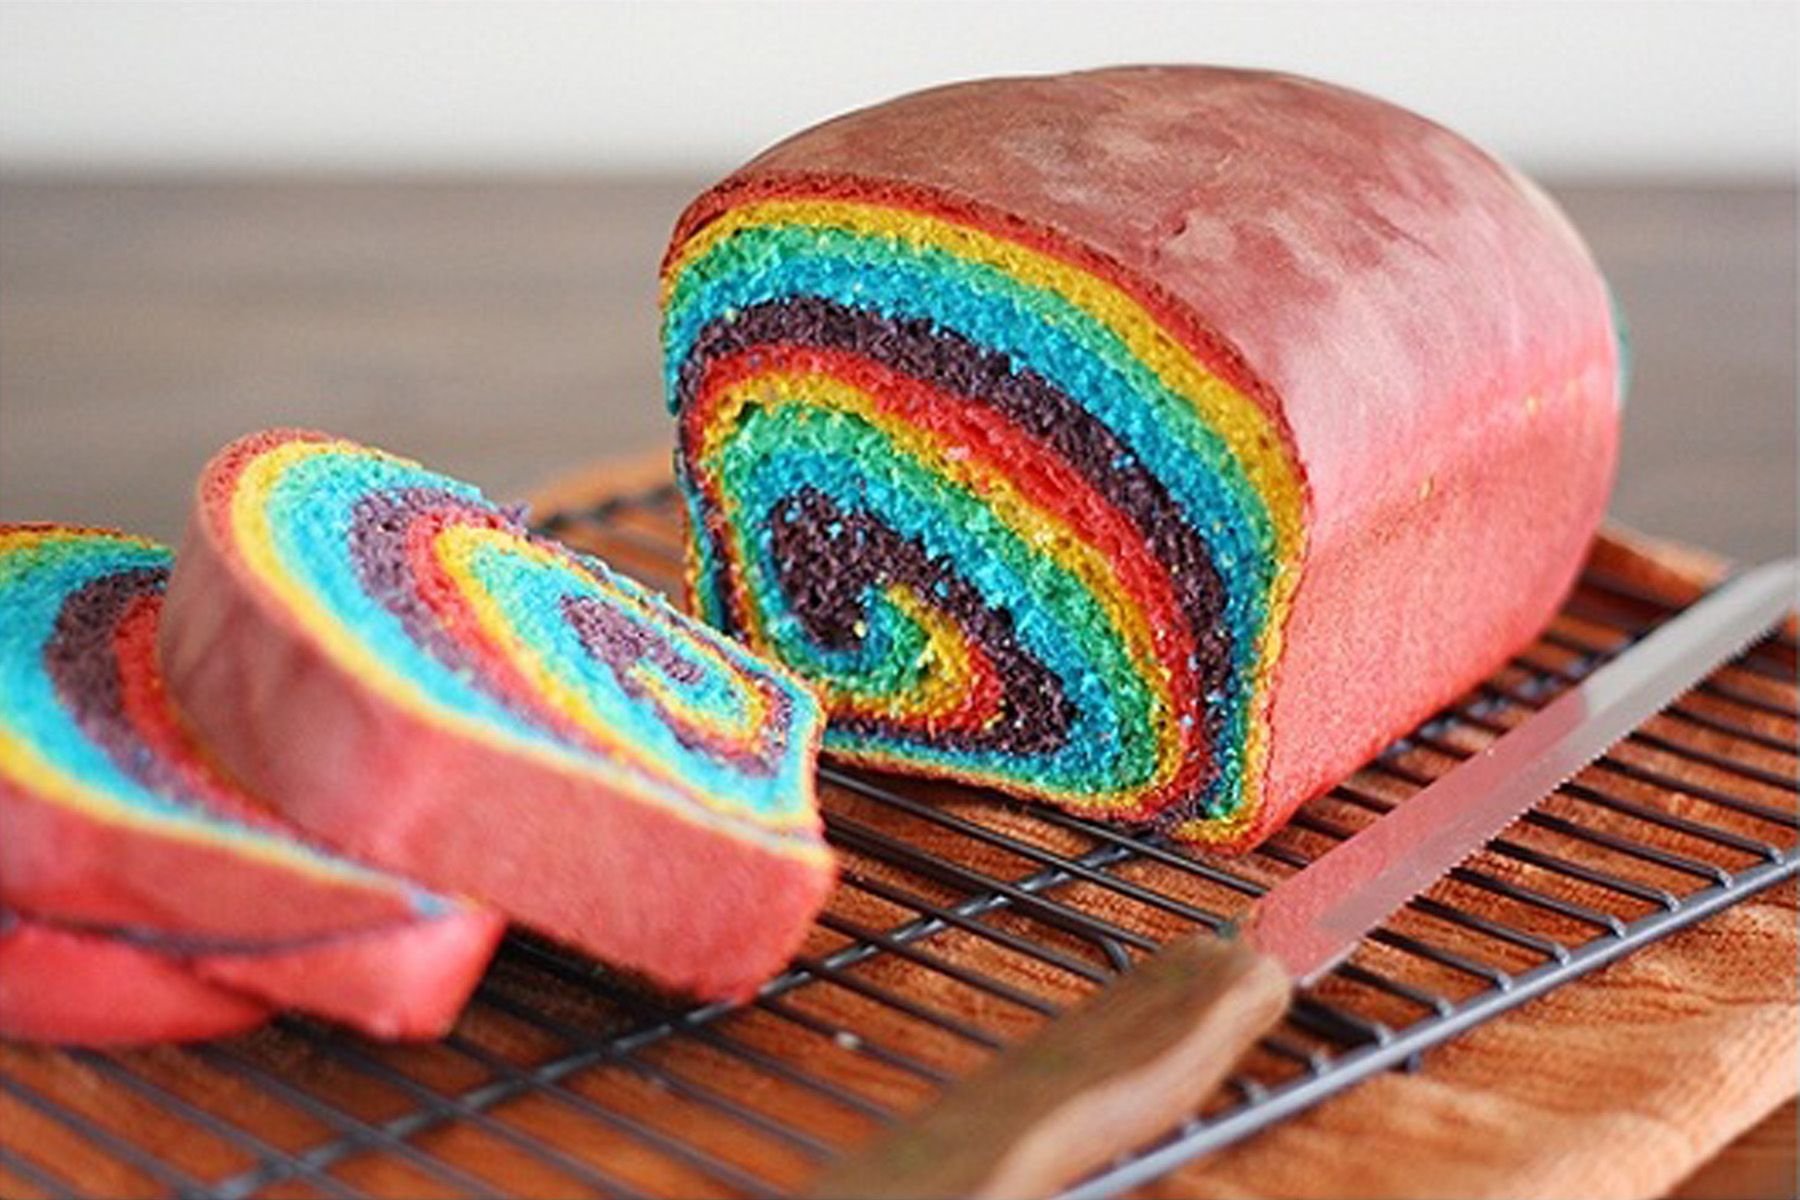 Что можно приготовить из цветная. Разноцветный хлеб. Разноцветная выпечка. Необычный хлеб. Необычные хлебобулочные изделия.